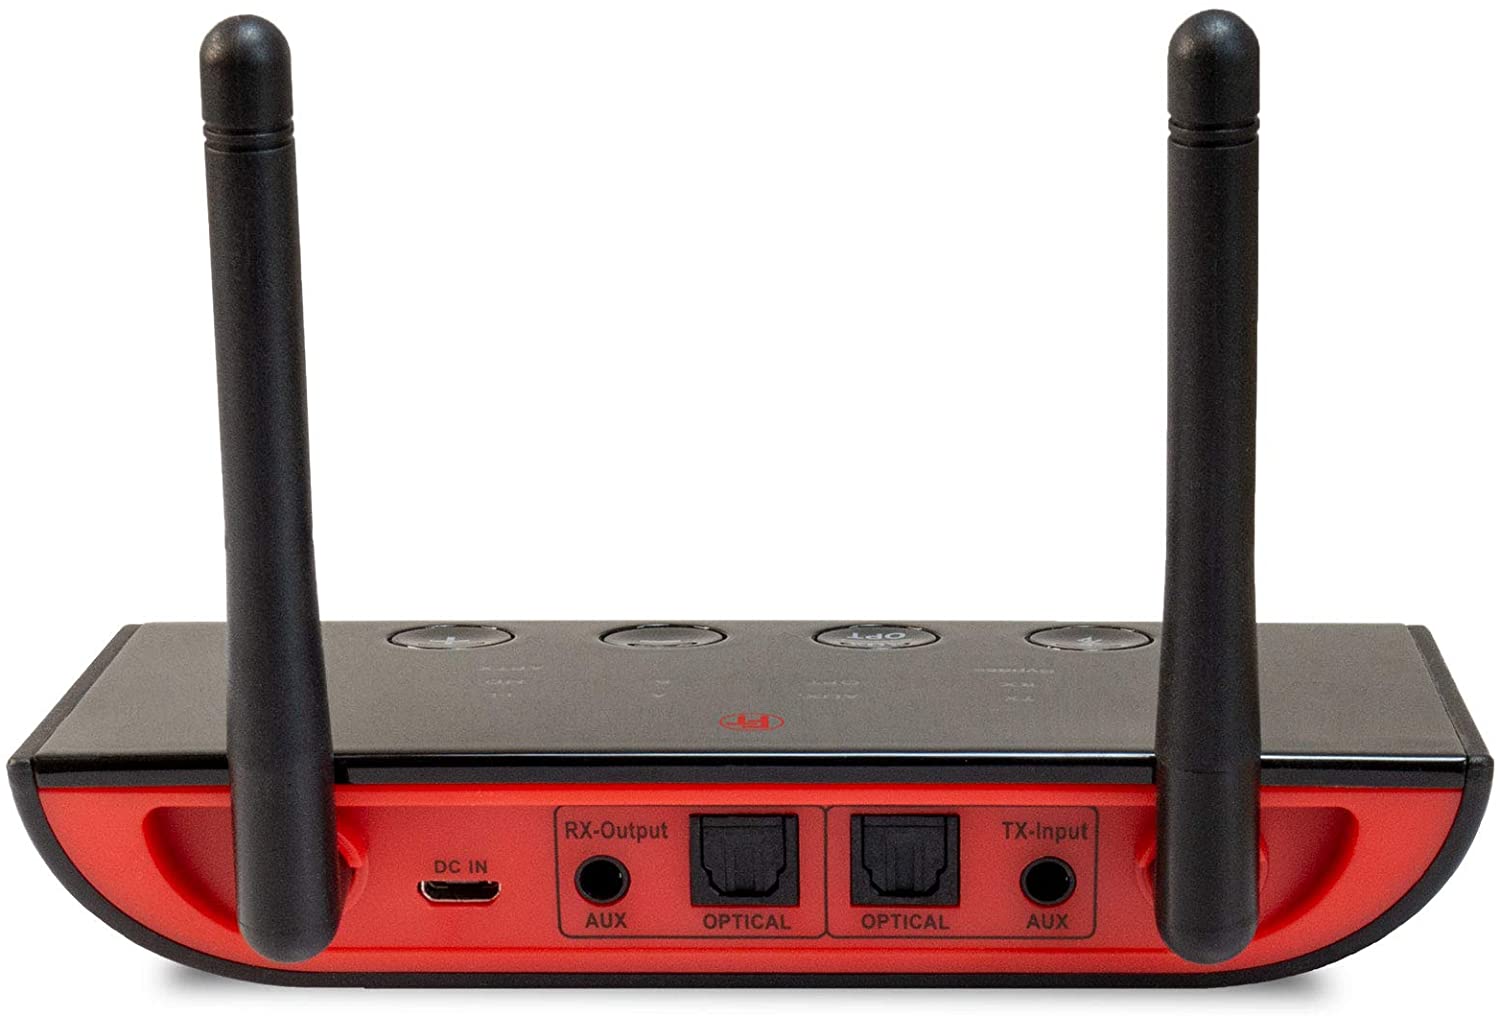 FeinTech ABT00102 Bluetooth 5.0 Audio Sender Empfänger aptX HD Low Latency Toslink SPDIF Bypass Konverter, schwarz